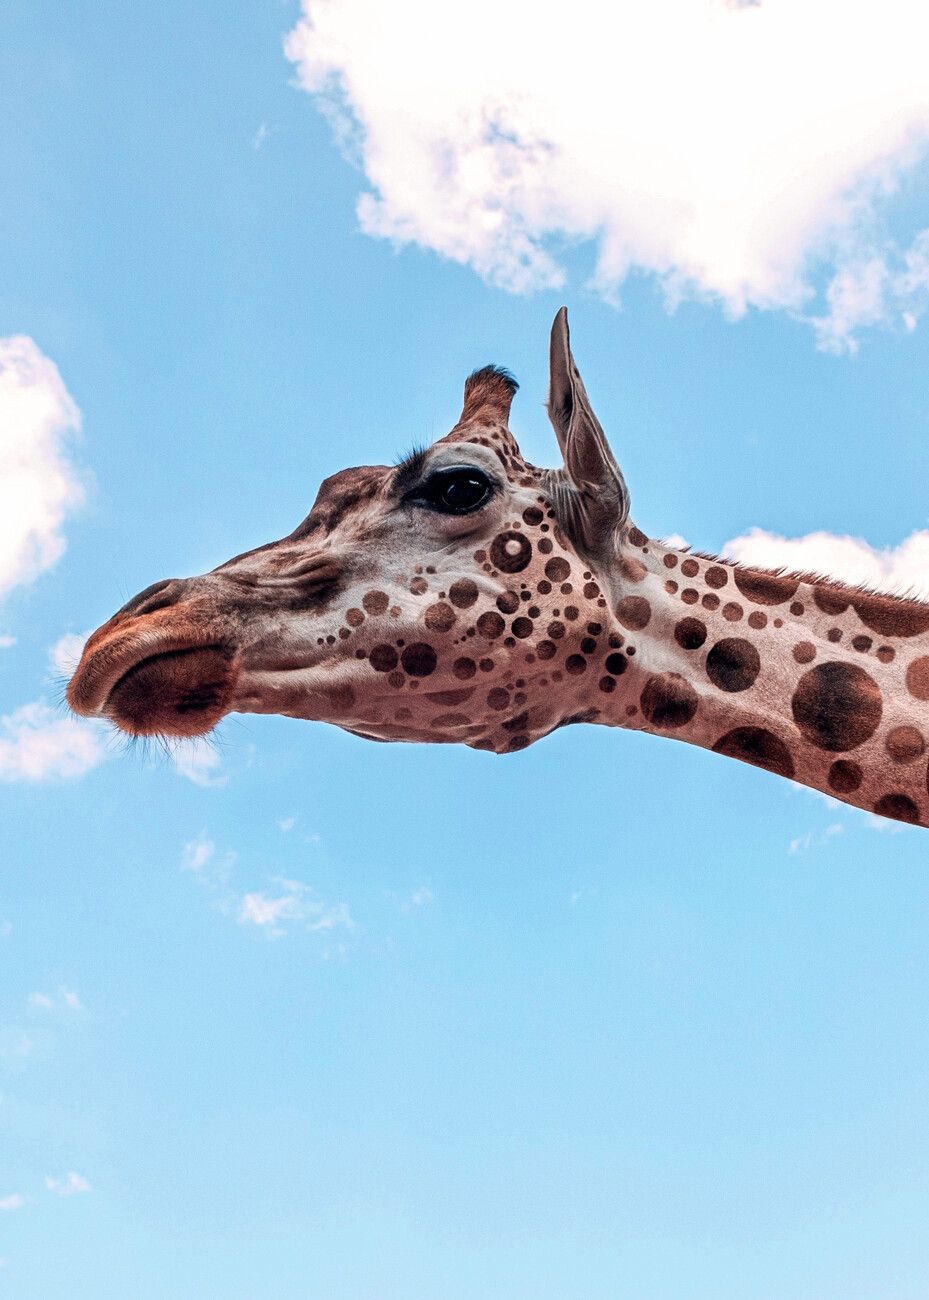  Schöne Tiere Hintergrundbild 929x1300. Leinwand Poster, Bilder Polkadots Giraffe Head